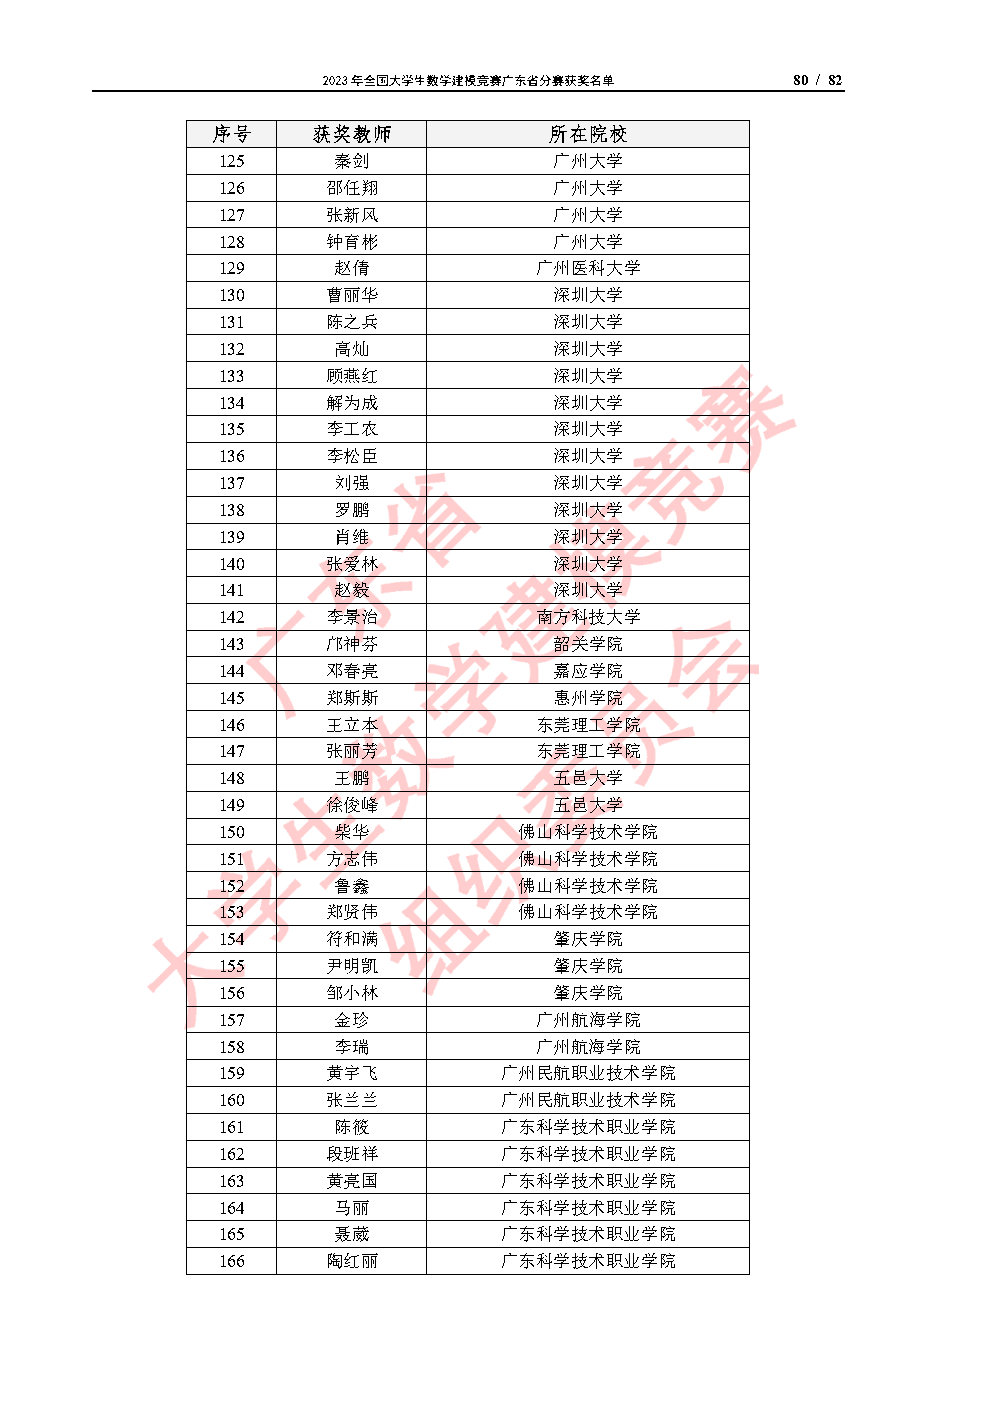 2023年全国大学生数学建模竞赛广东省分赛获奖名单_Page80.jpg